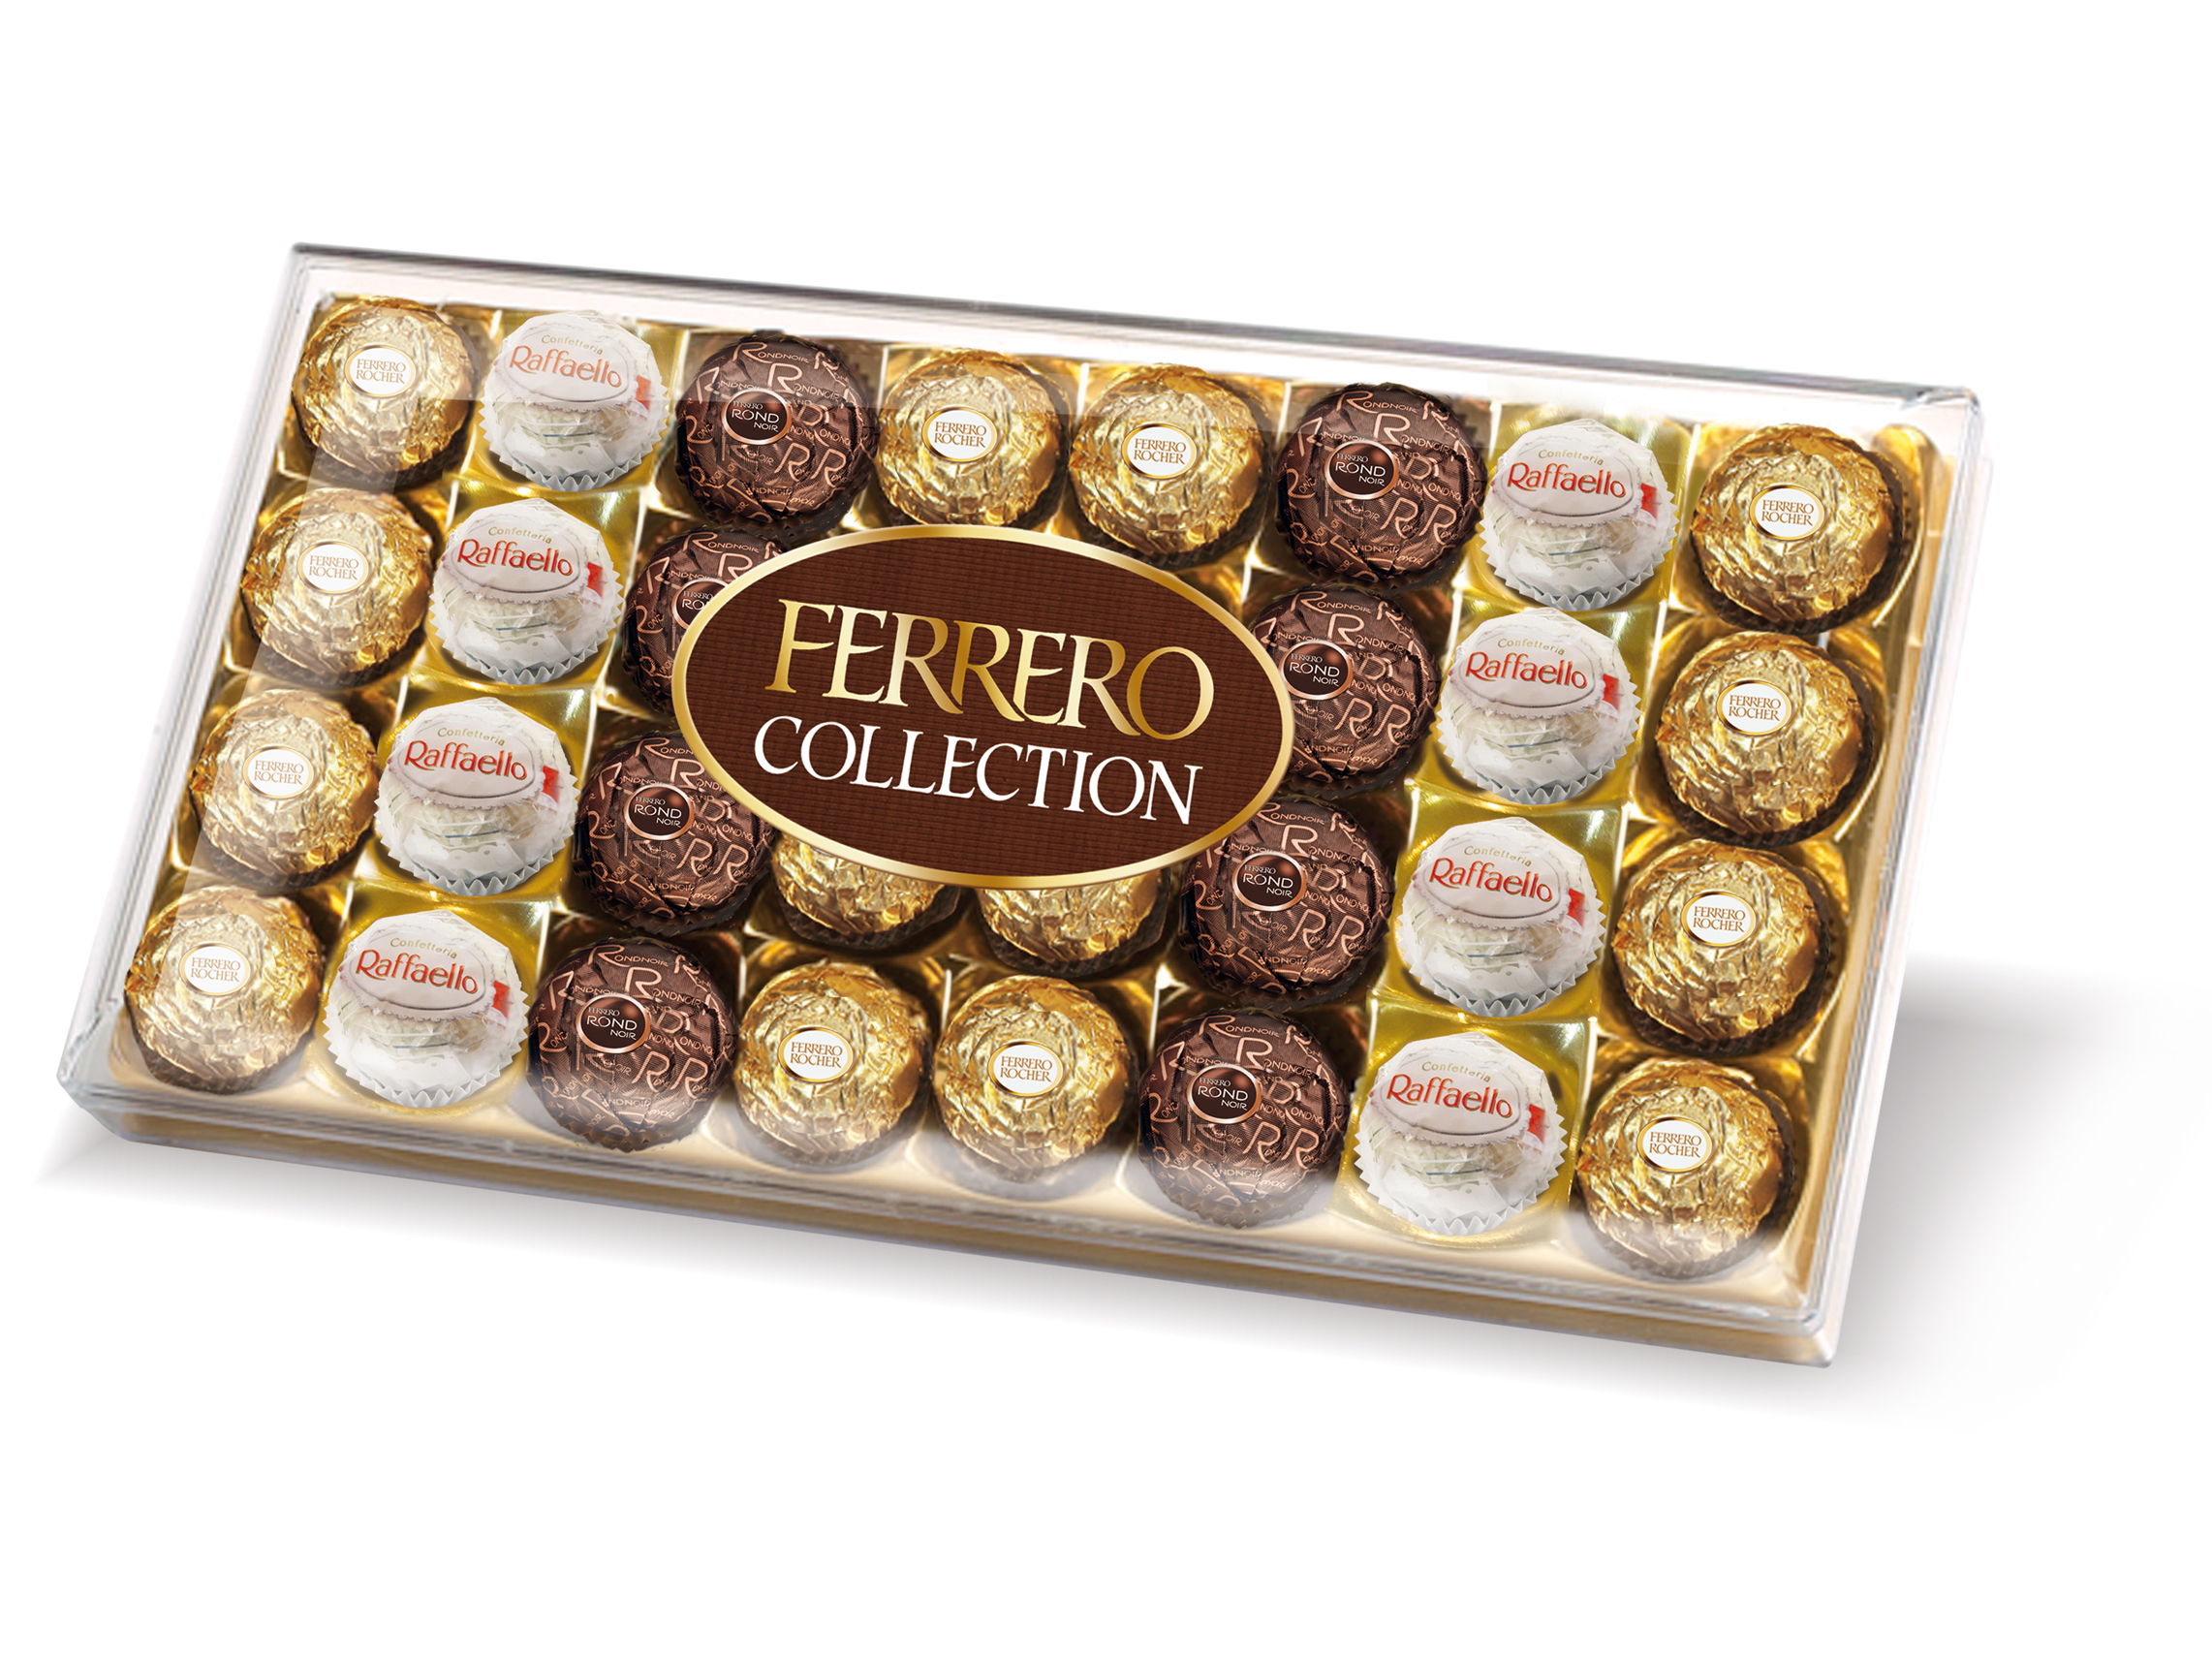 Ferrero Rocher collection, 359.2